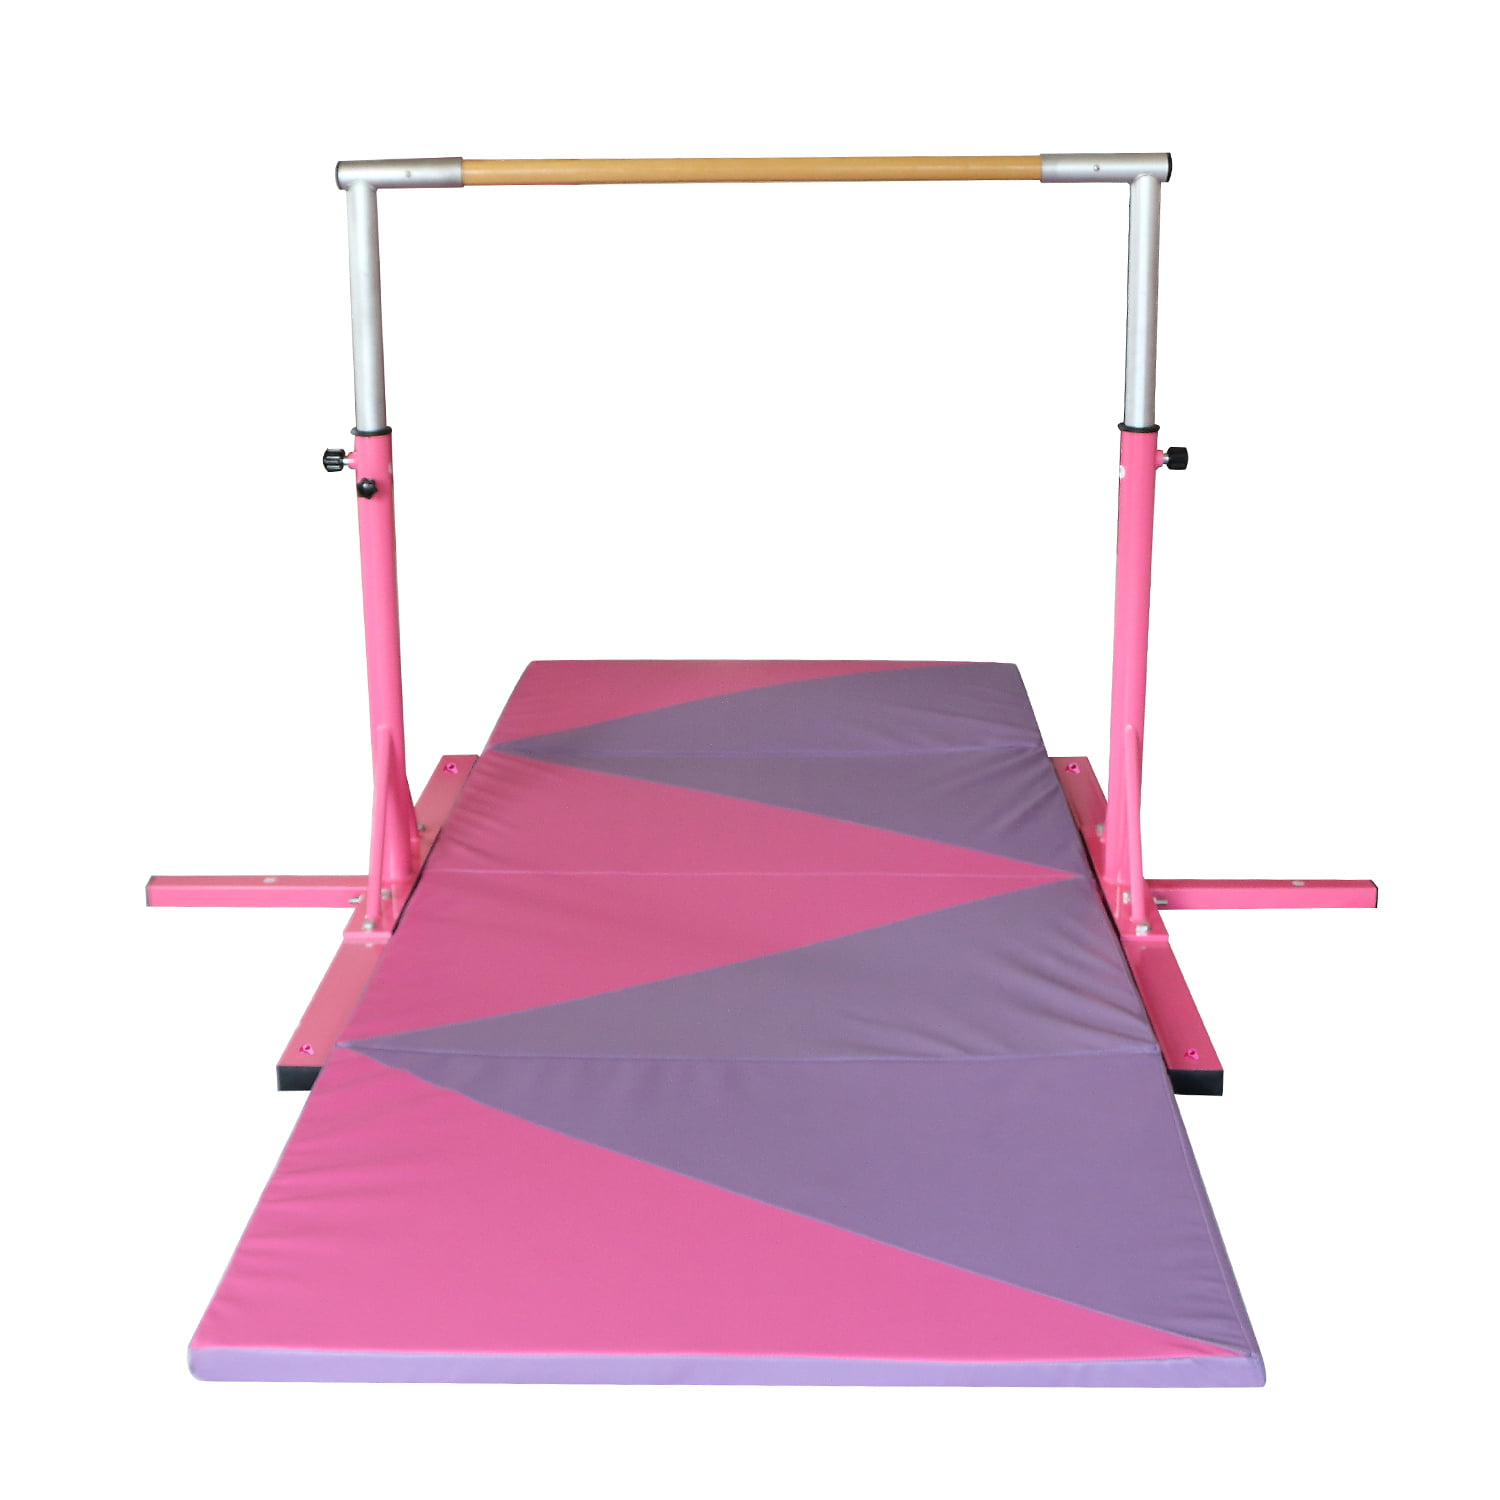 Walcut USPT4137 Adjustable Gymnastics Horizontal Bar for Kids Pink for sale online 